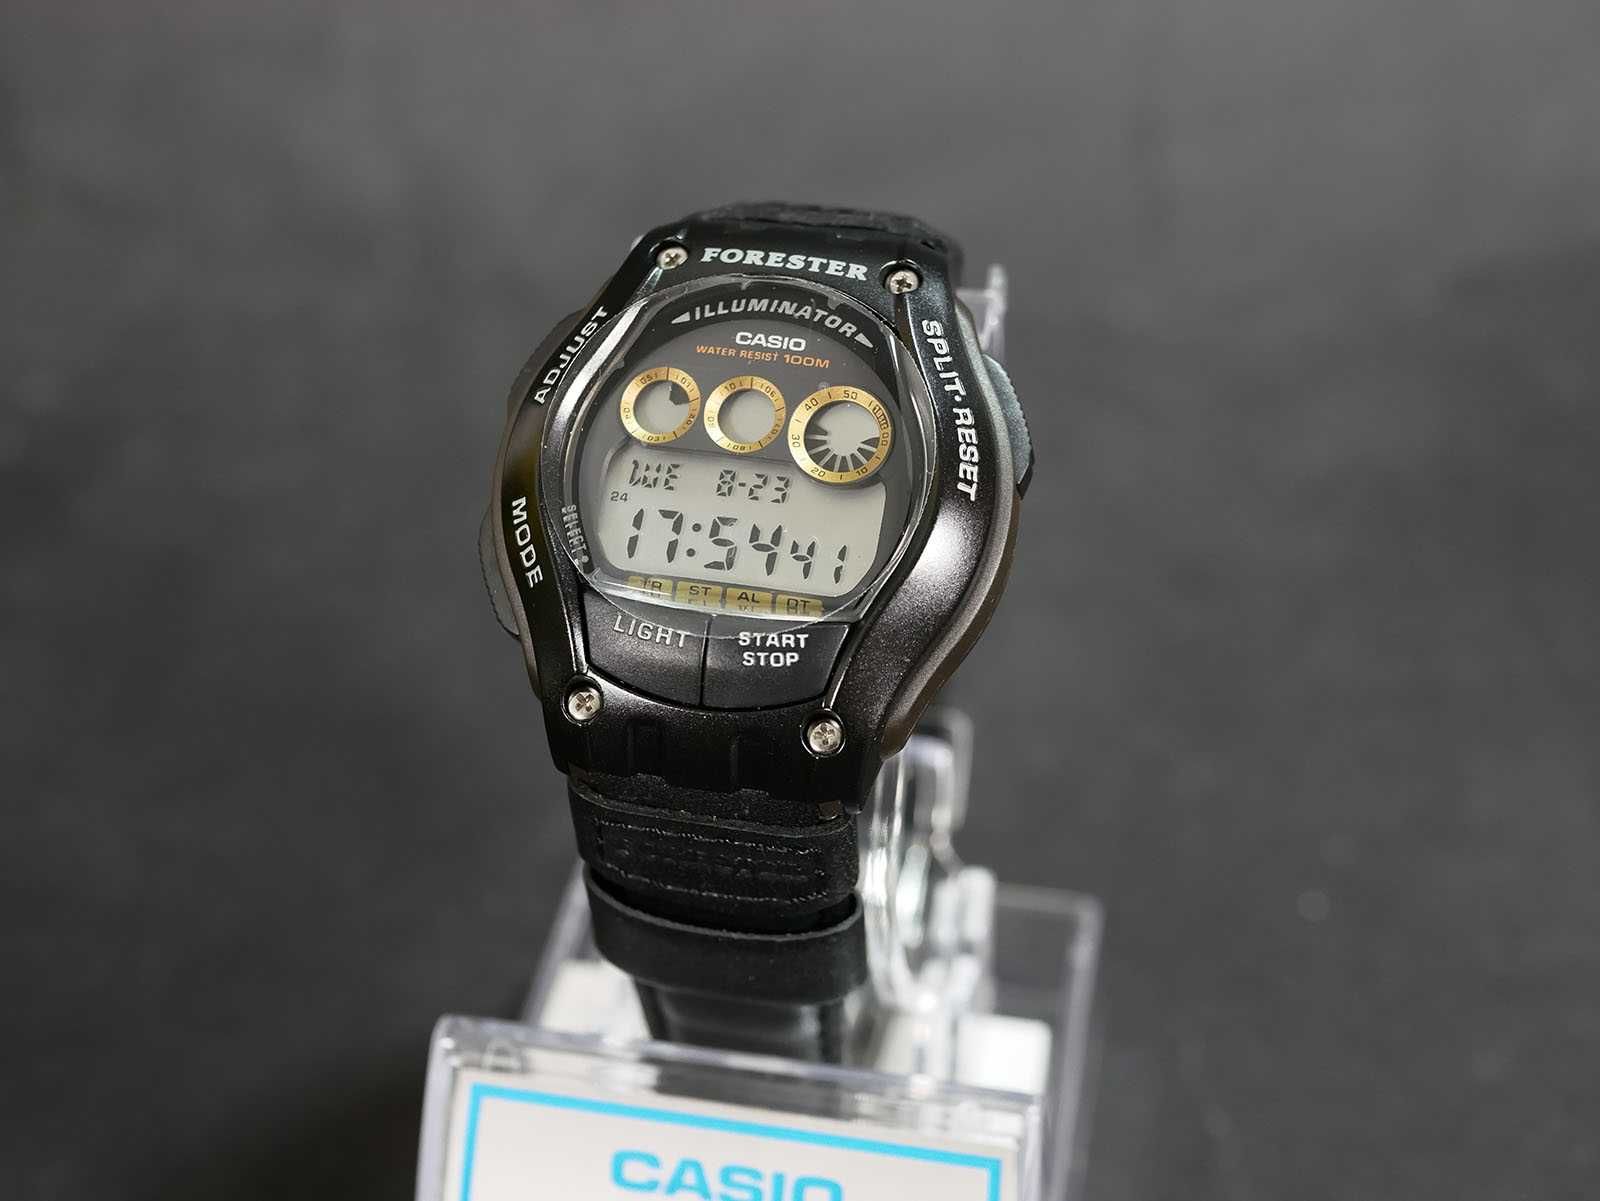 Часы Casio FT-100HL-1AV Forester